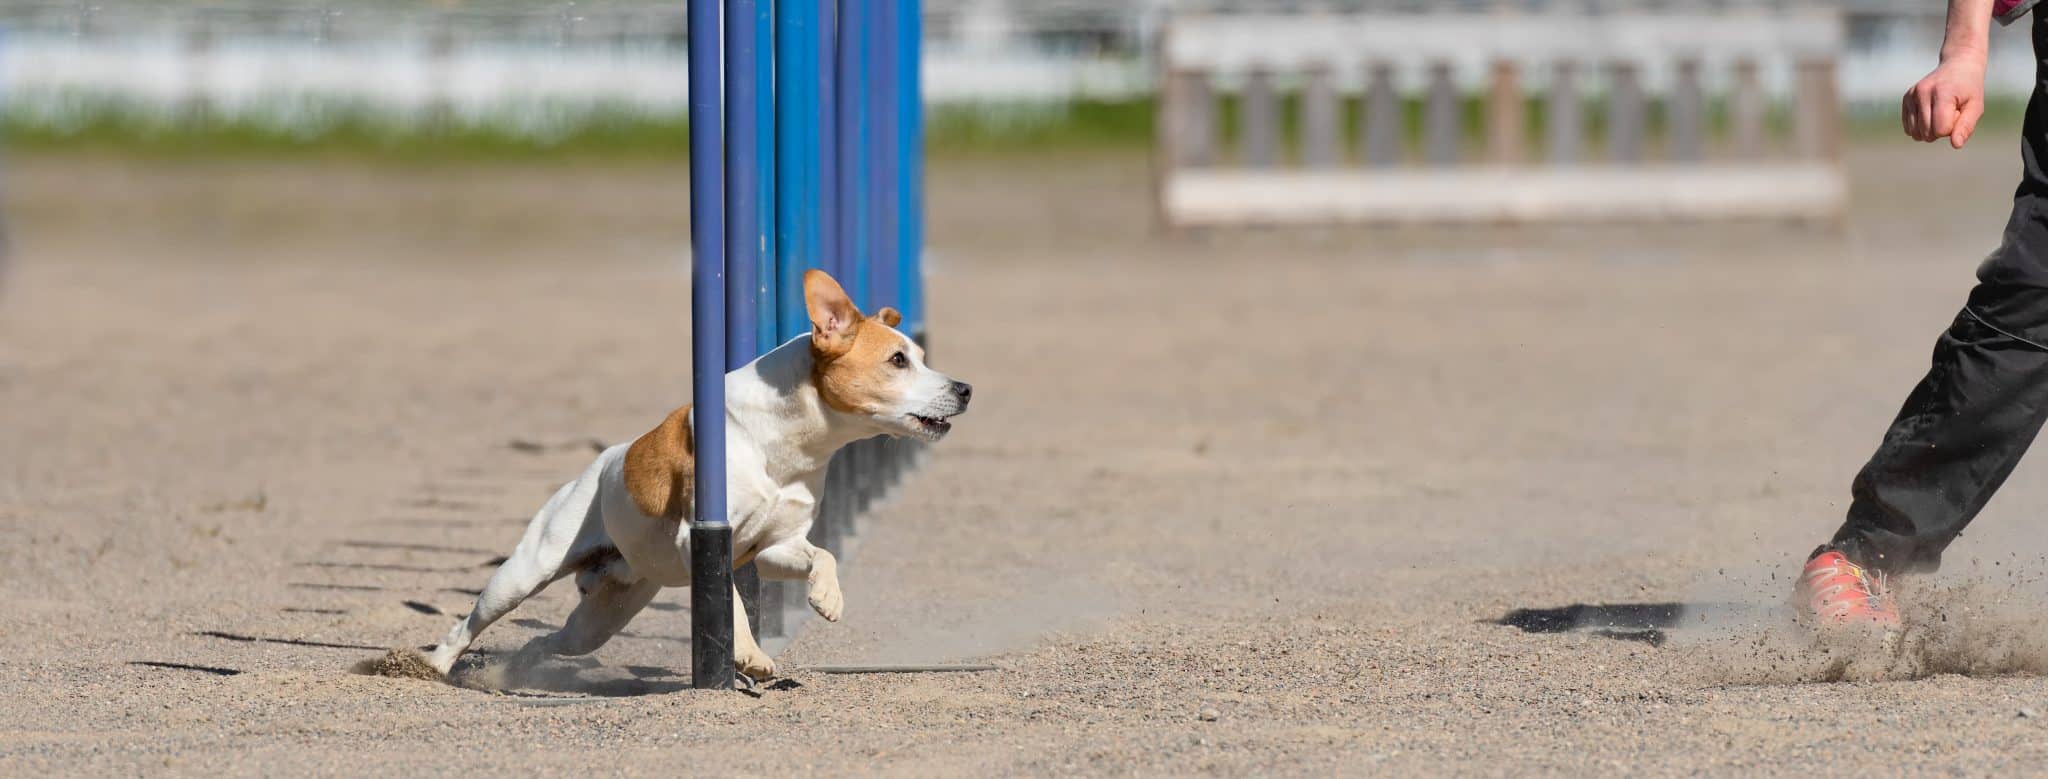 כלב קטן בתחרות אילוף רץ בין עמודים